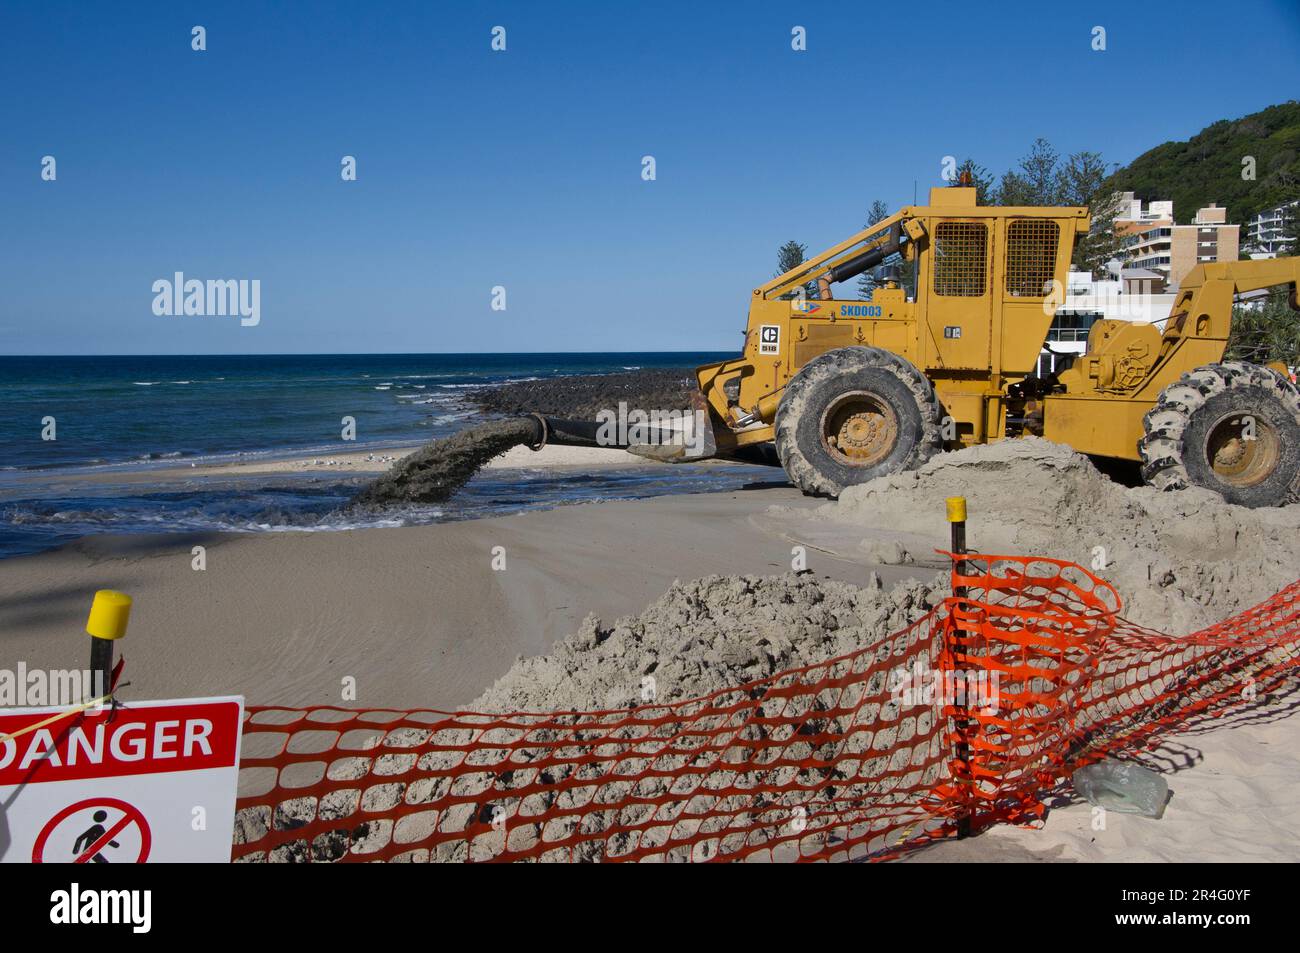 Pompage de sable sur la plage de Burleigh sur la Gold Coast, en Australie. Remise en état annuelle de la plage et replantation de sable. Véhicule à pompe jaune. Plage clôturée pour le travail. Banque D'Images